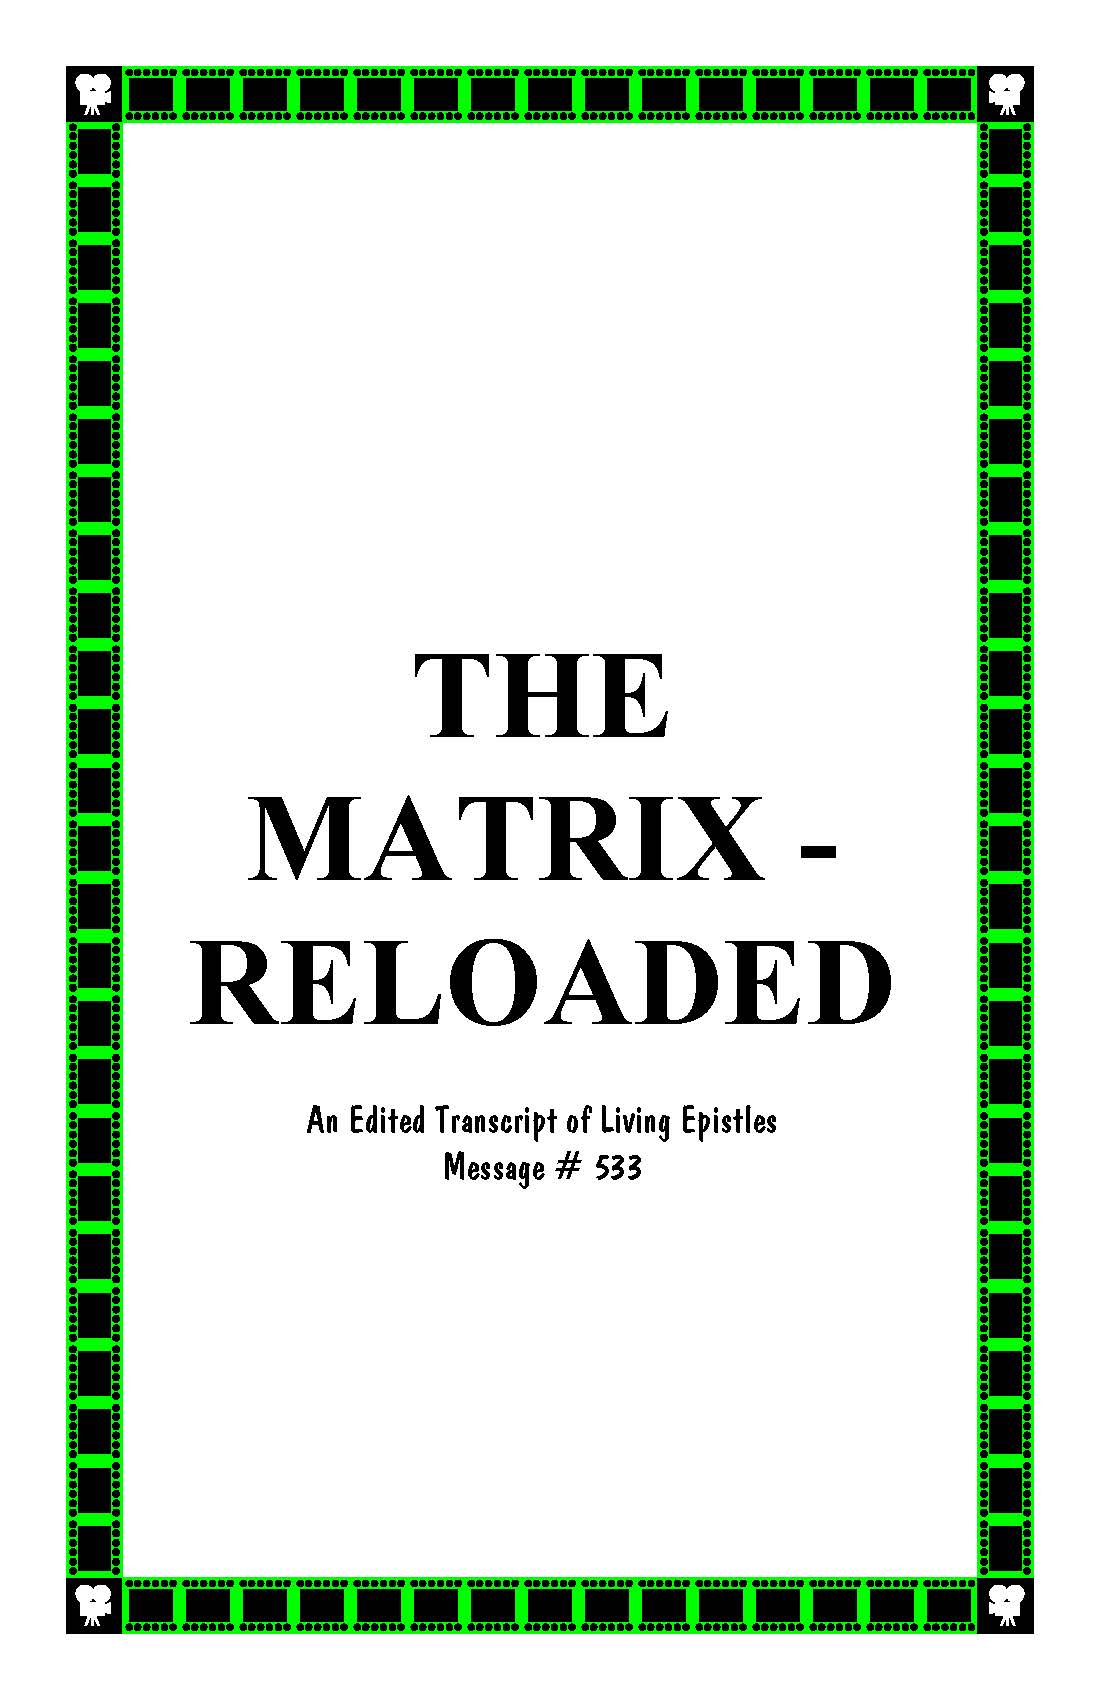 MATRIX RELOADED 533 LEM BOOK COVER 030116